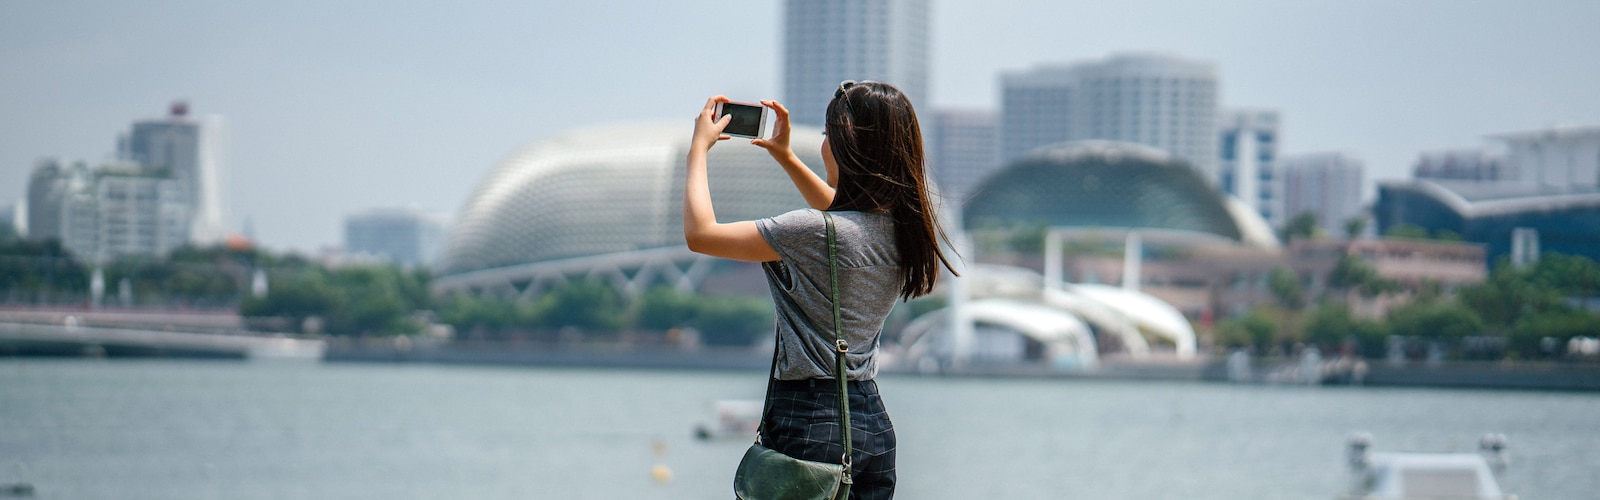 Una donna che fotografa un panorama cittadino con un iPhone